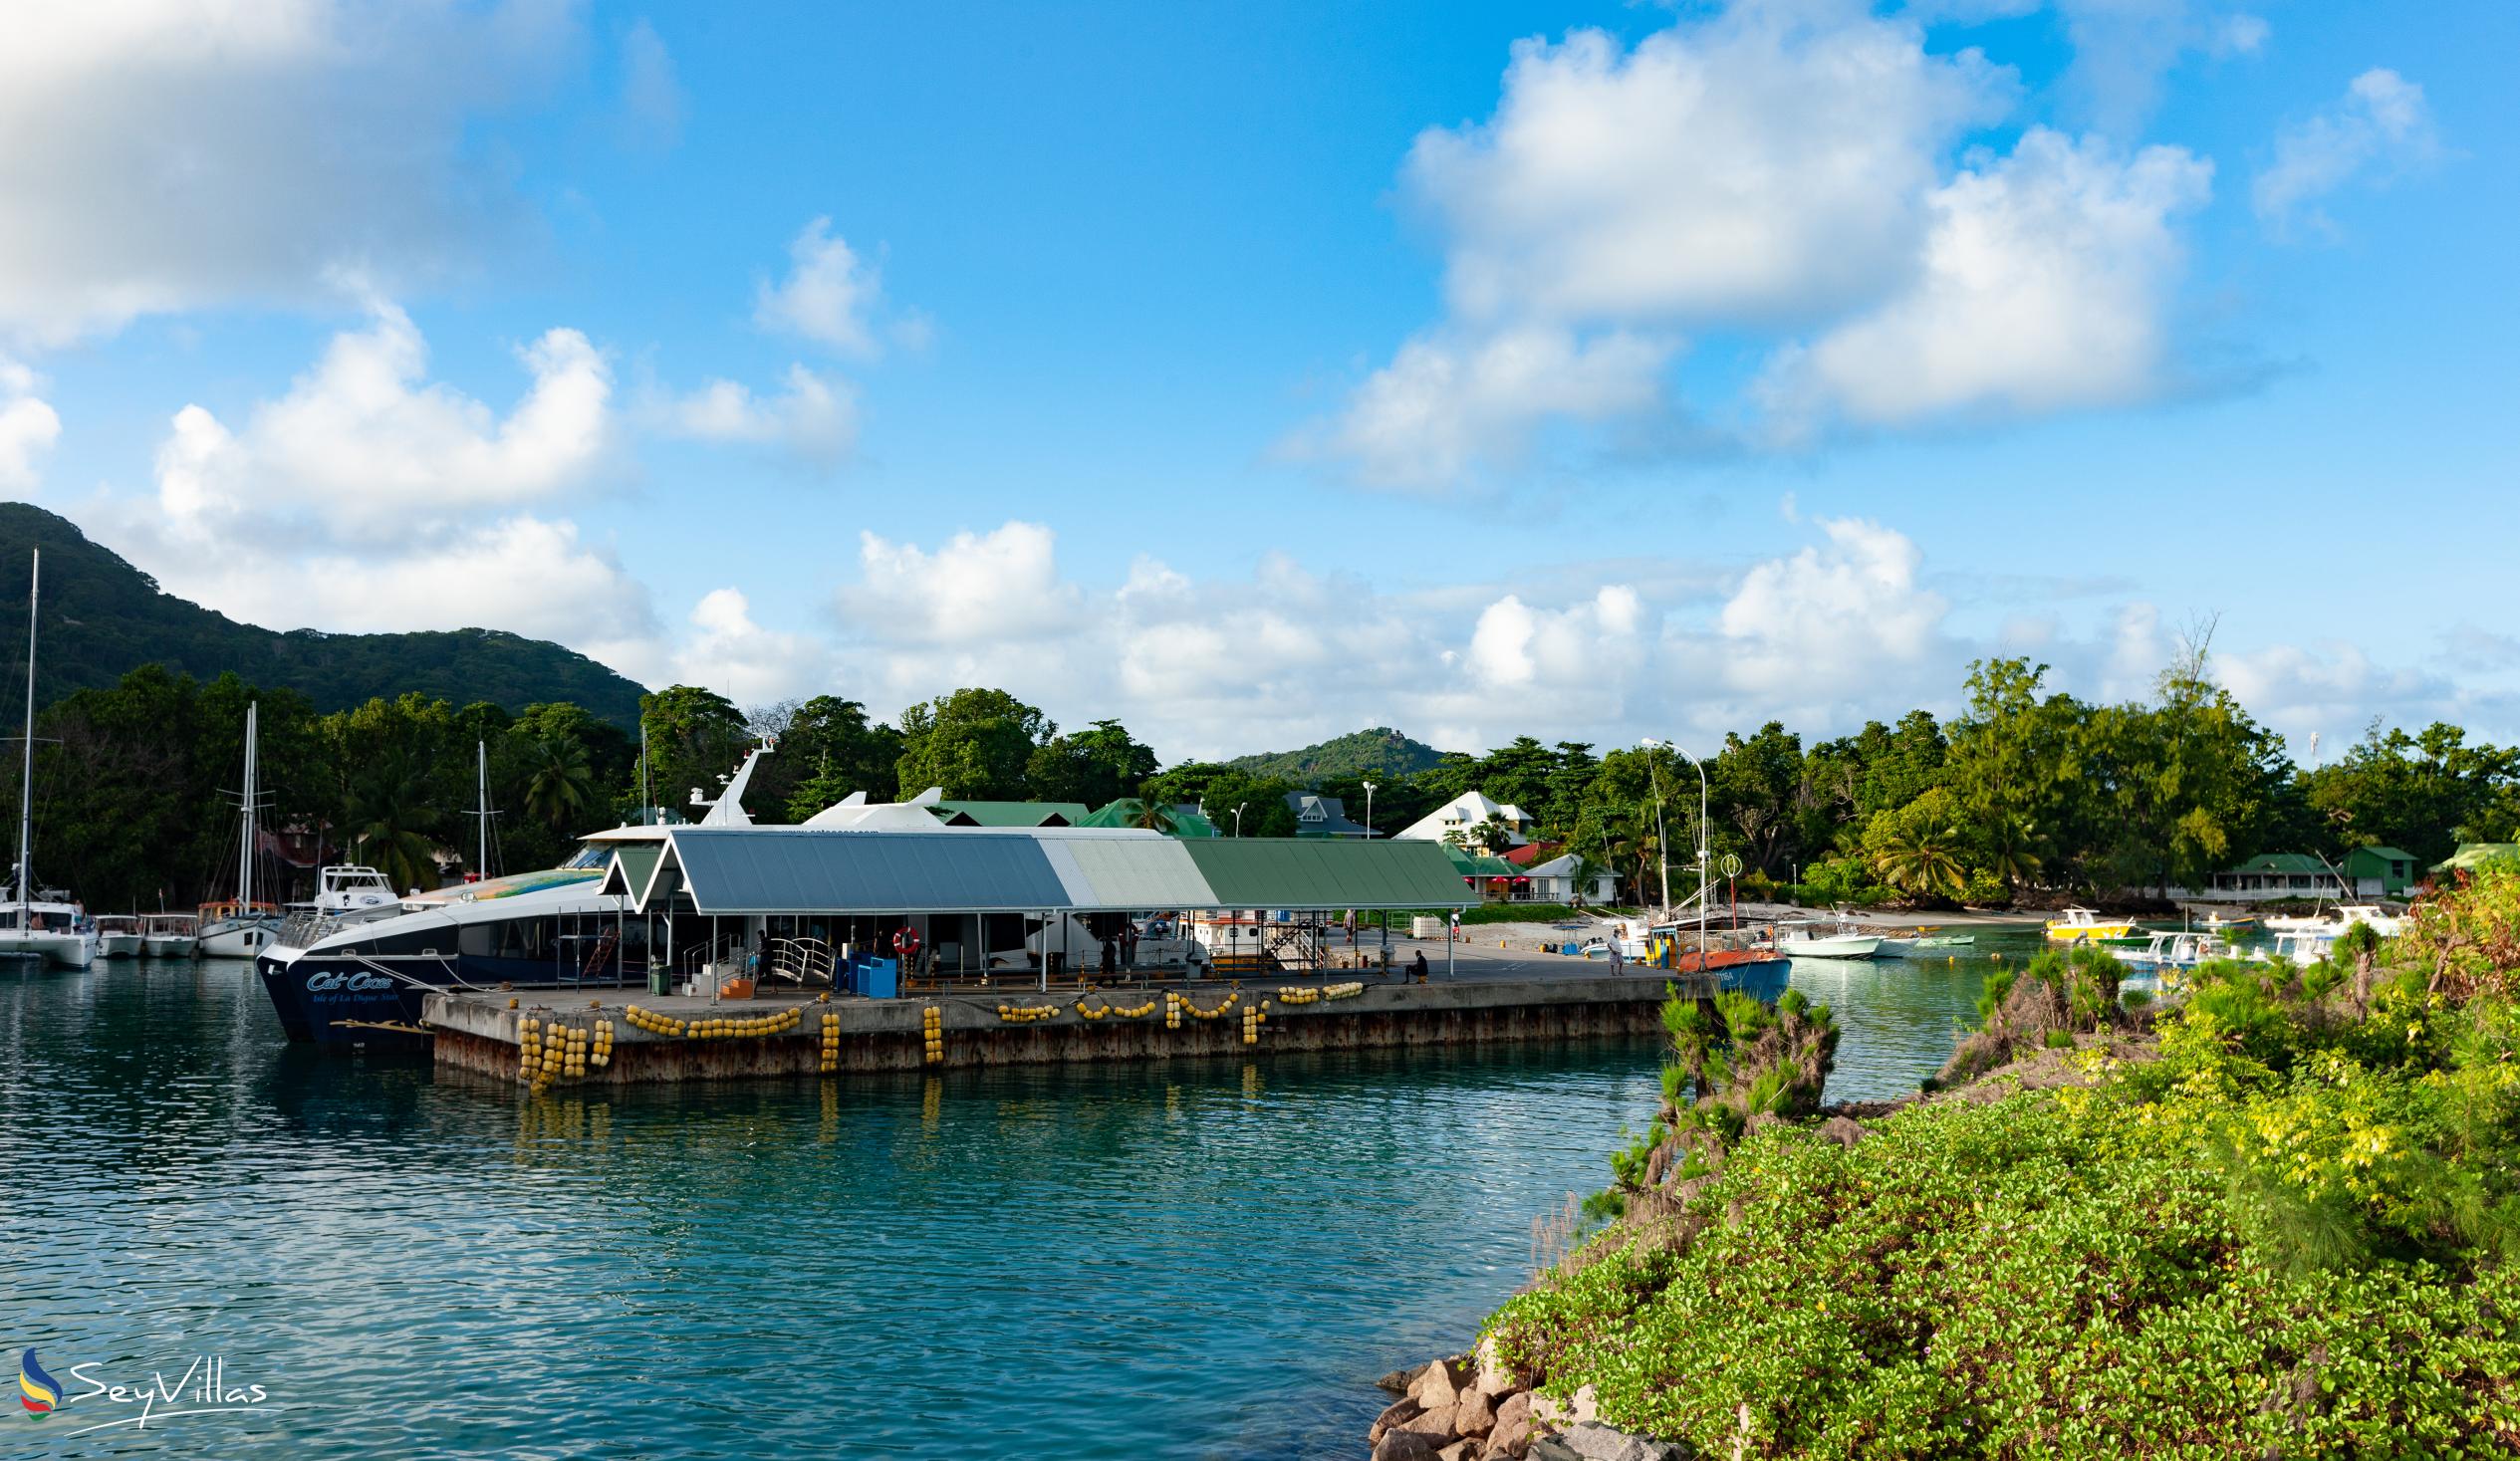 Foto 16: Calou Guesthouse - Location - La Digue (Seychelles)